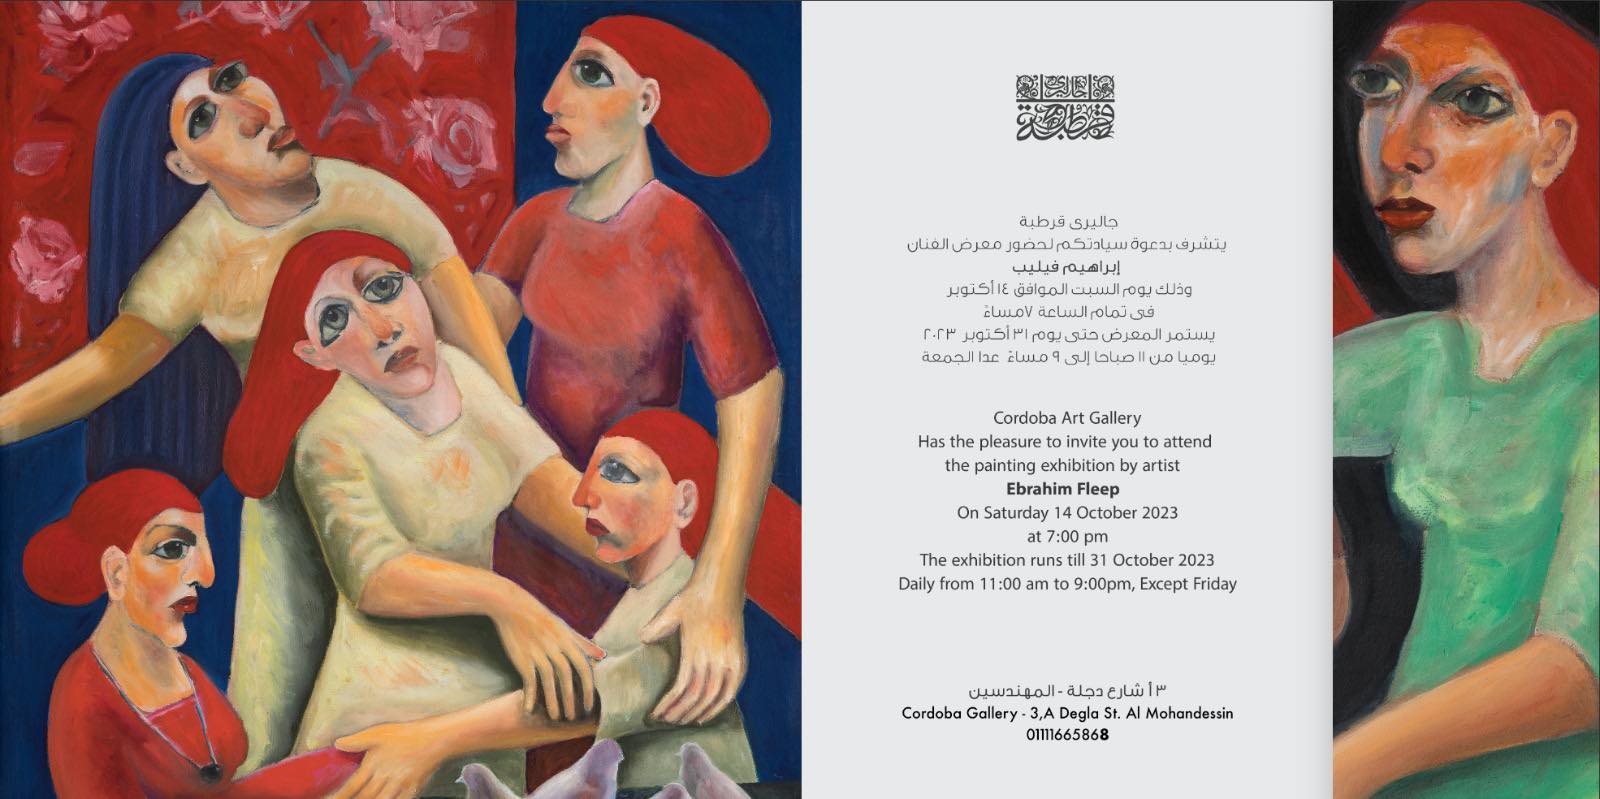 افتتاح معرض (قصص قصيرة) للفنان إبراهيم فيليب بجاليري قرطبة